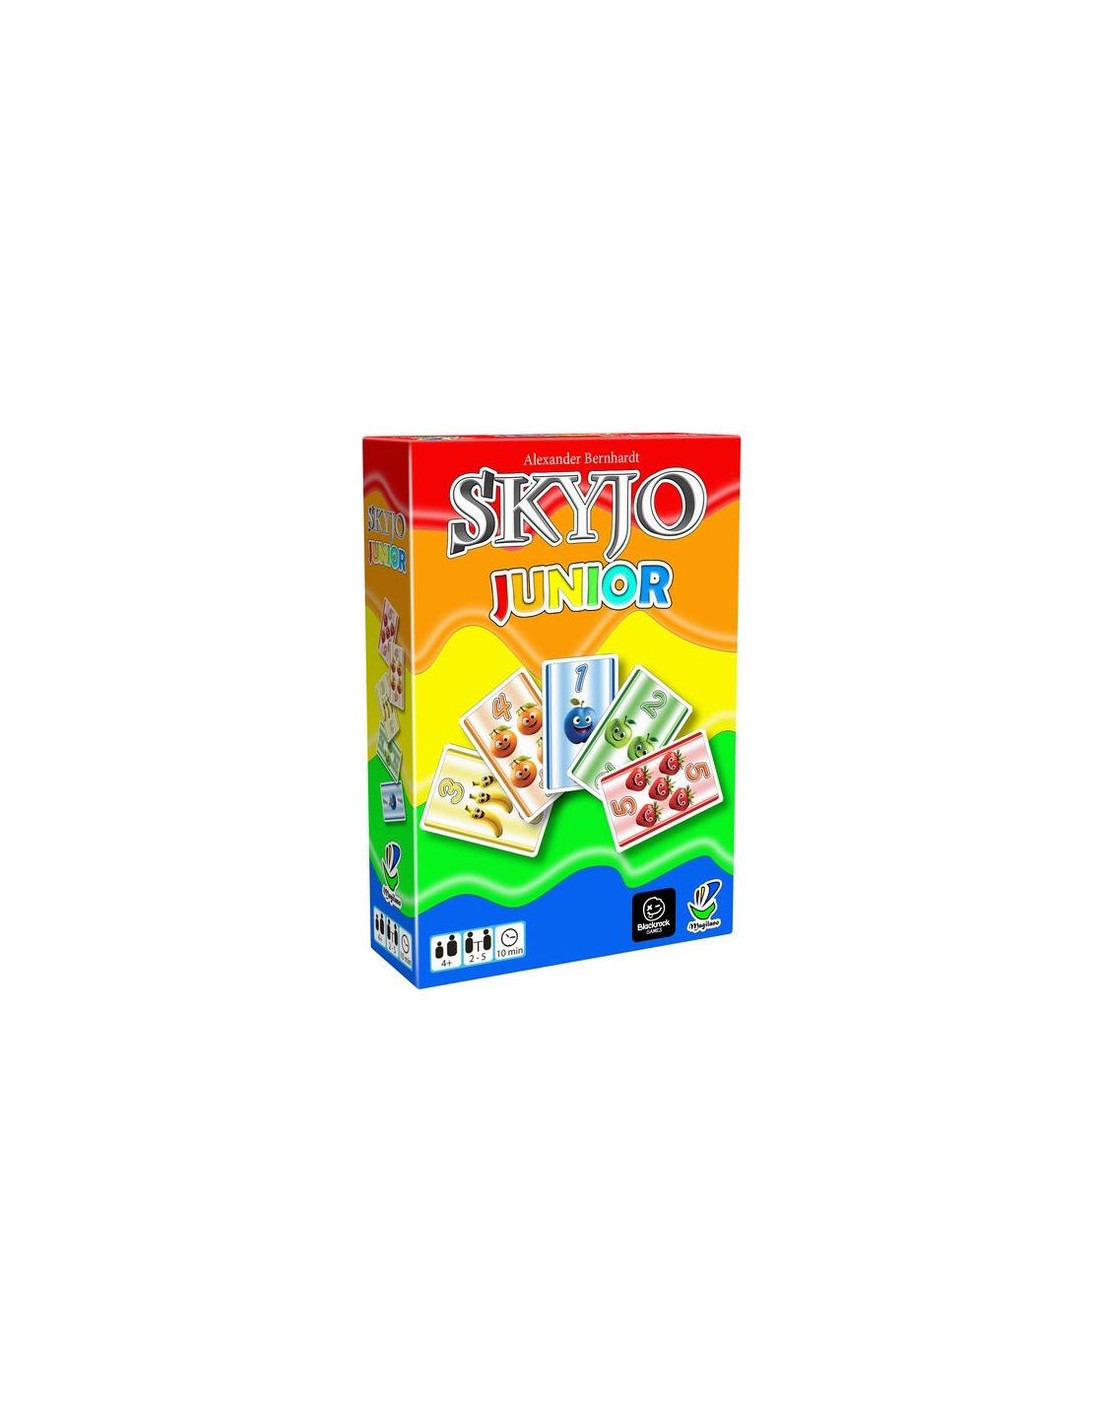 Skyjo Action  Smyths Toys France